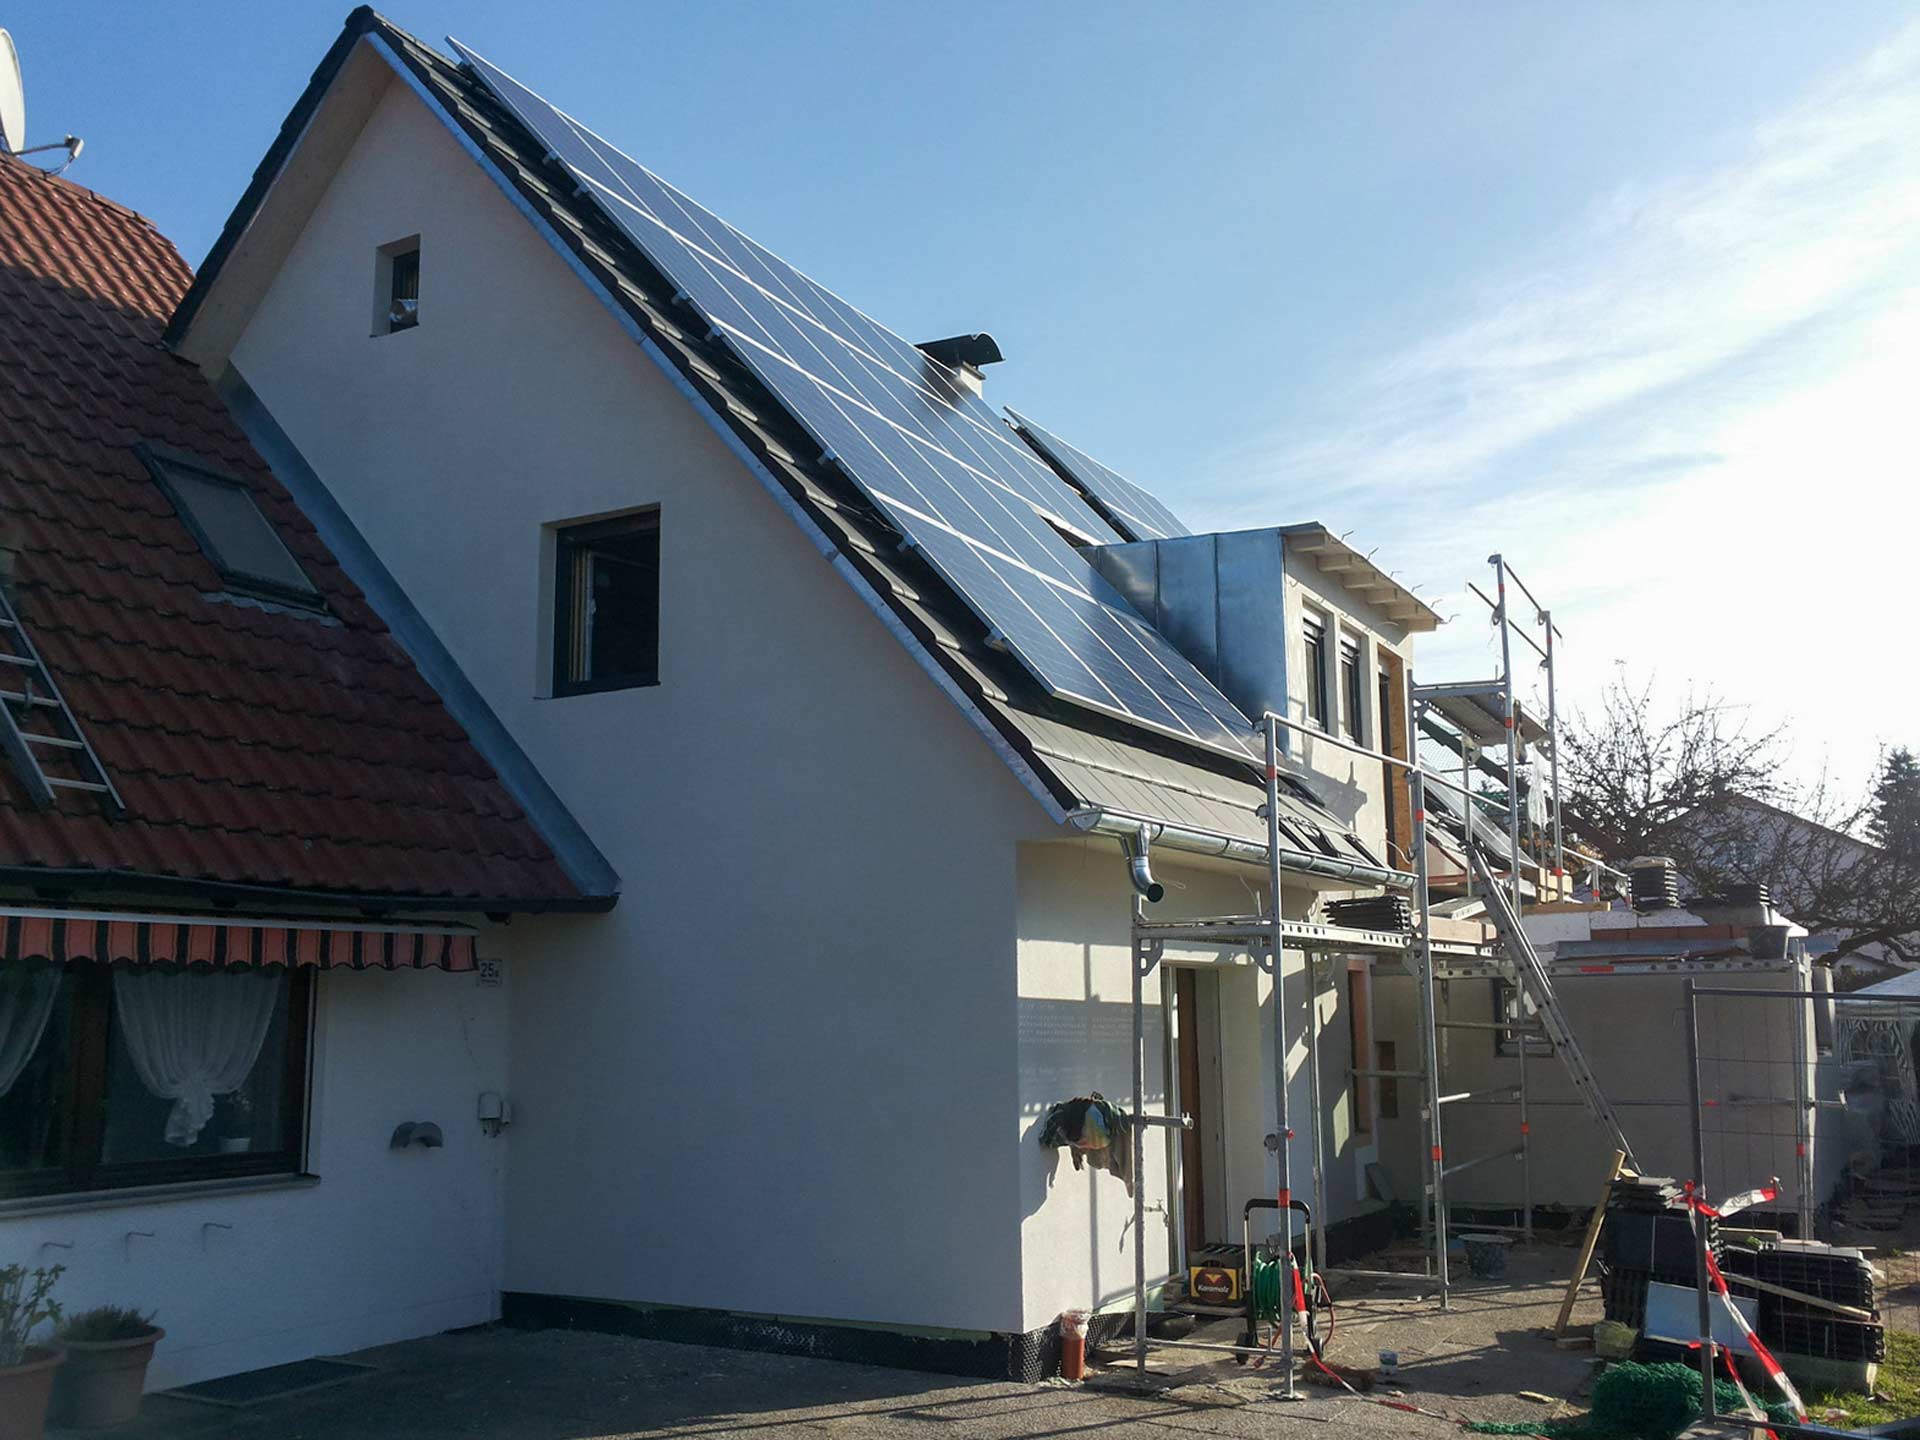 Planungsgemeinschaft_Davids_Partner_energiehaus_5